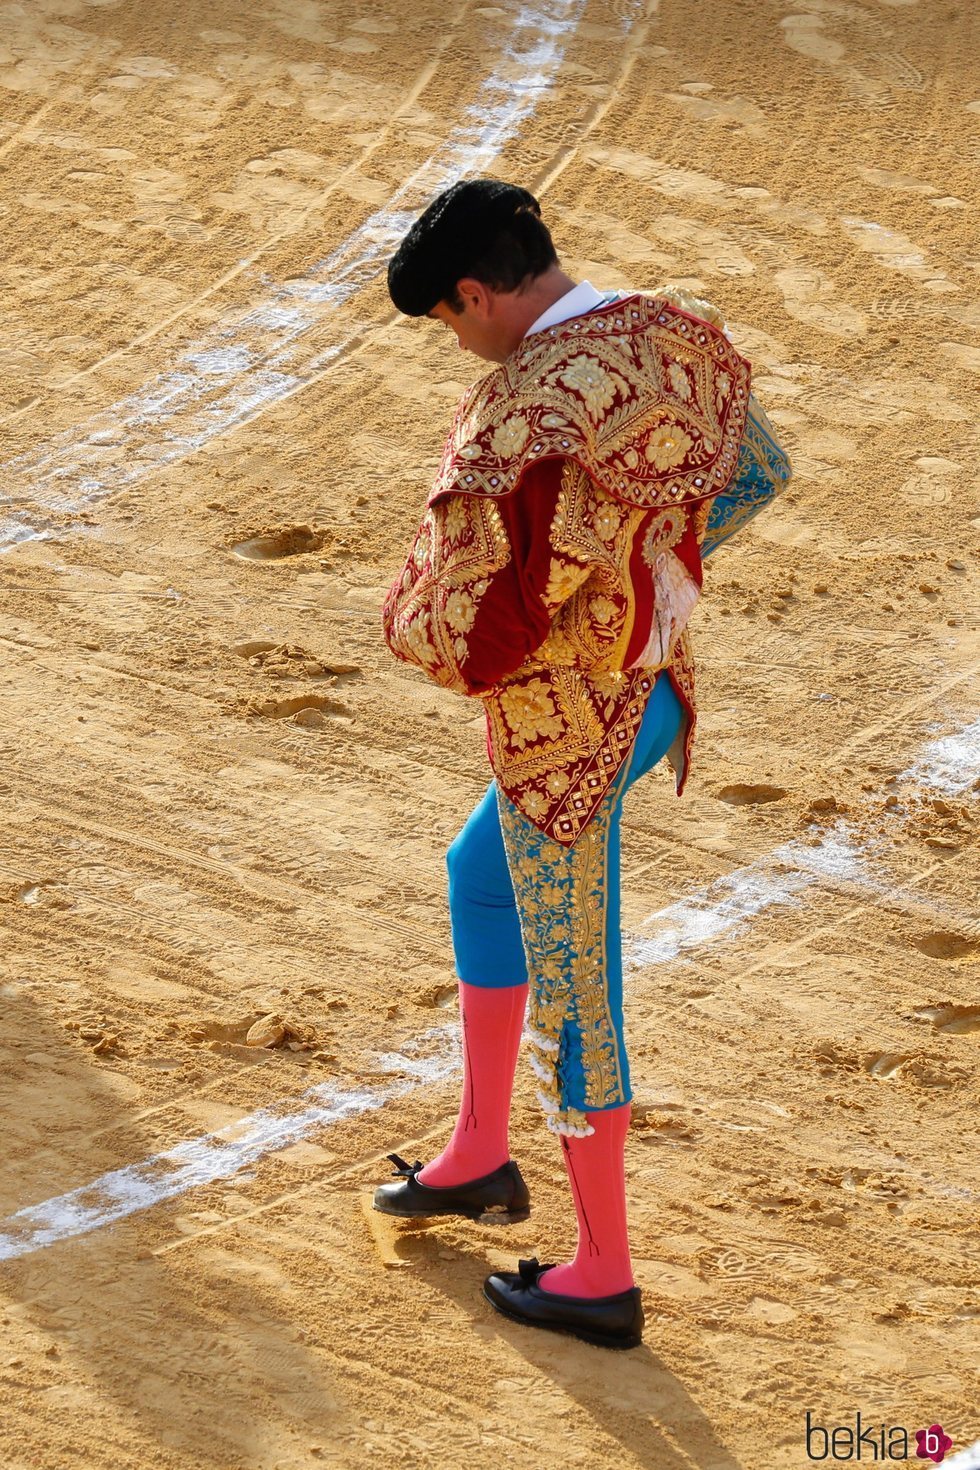 Enrique Ponce dibujando sobre la arena una 'A' por Ana Soria en la corrida de toros de Osuna